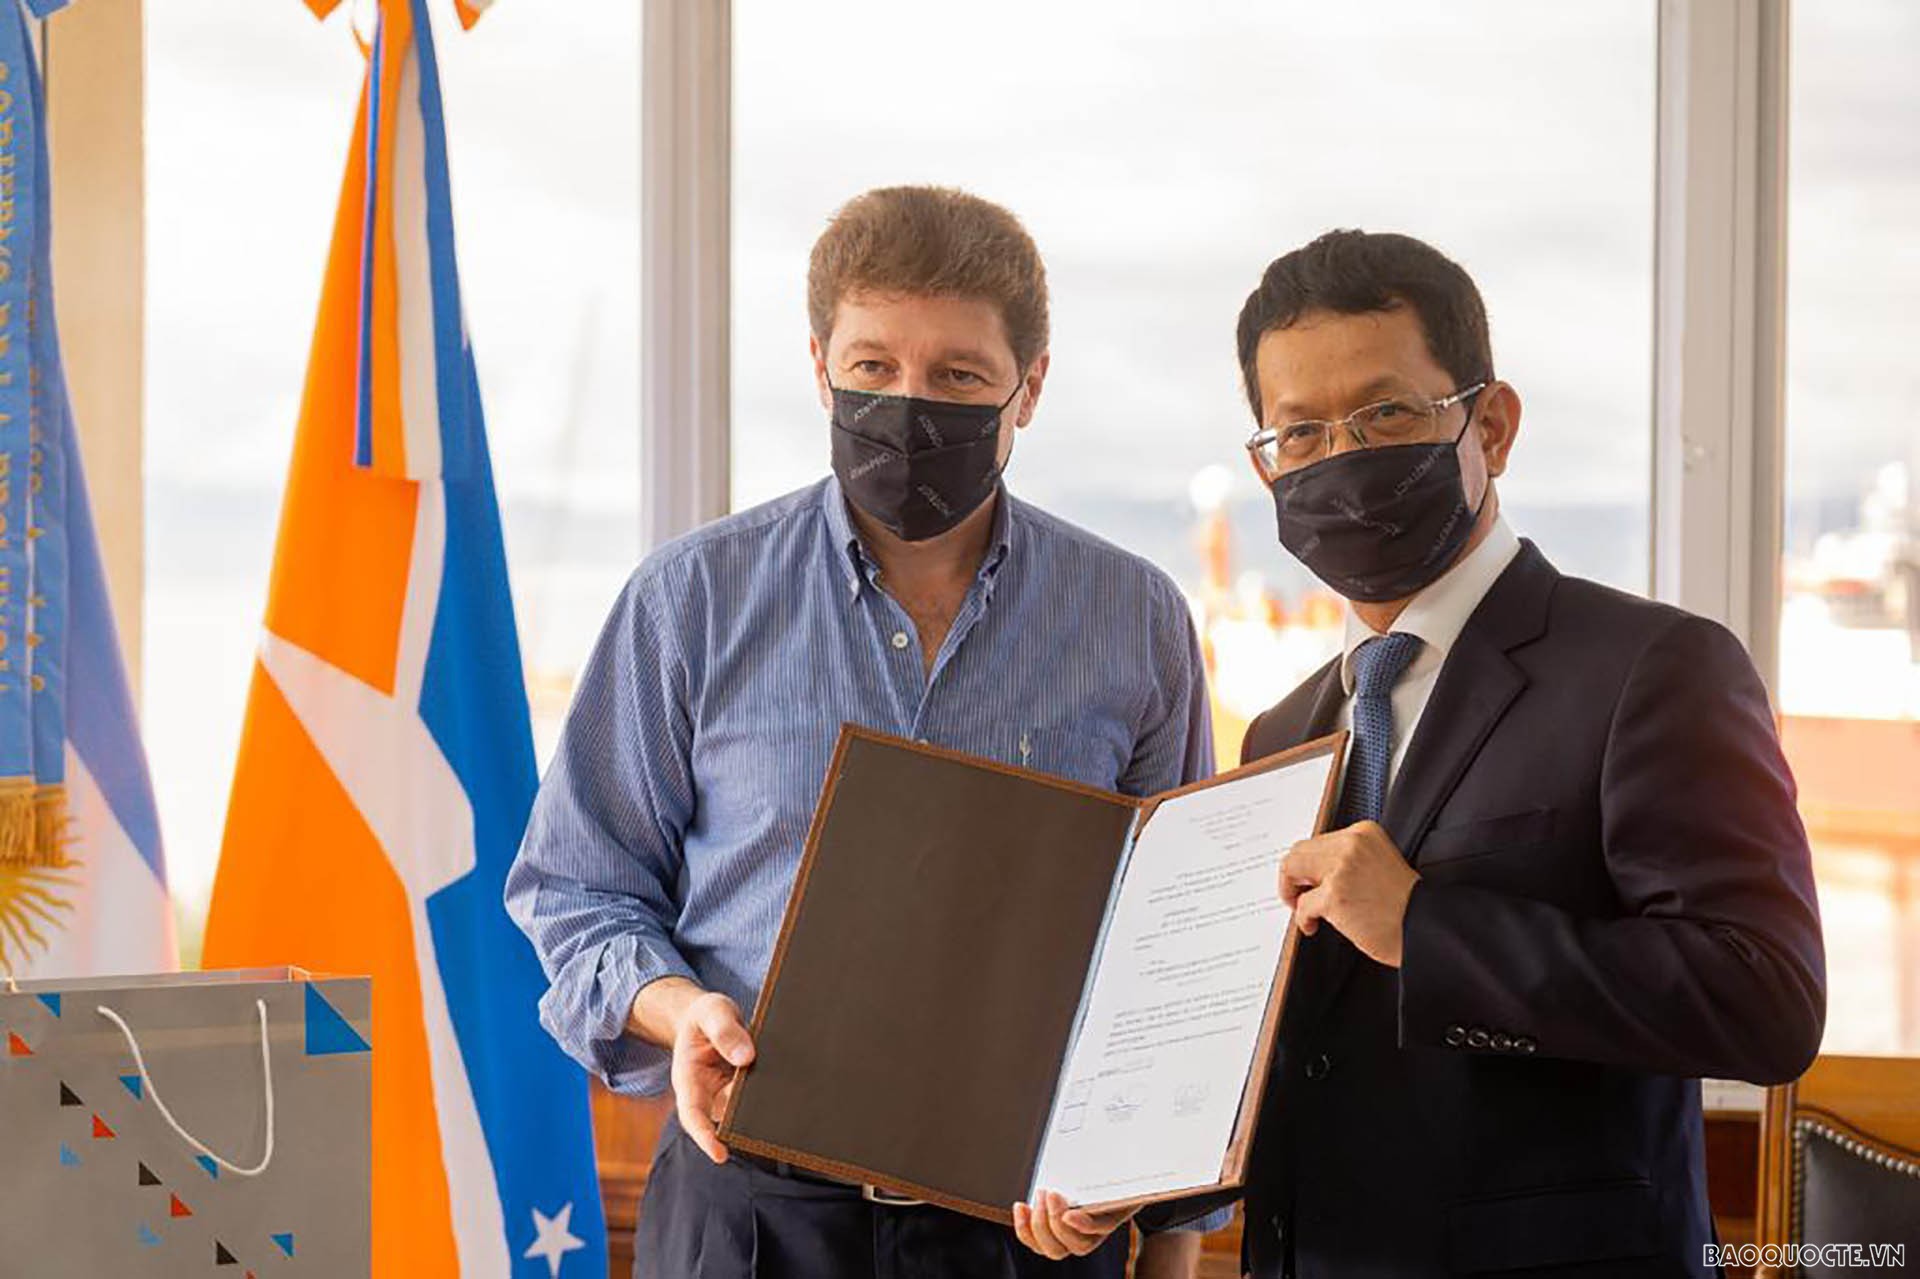 Thống đốc Gustavo Melella trao tặng Đại sứ Dương Quốc Thanh quyết định công nhận Khách danh dự của tỉnh.